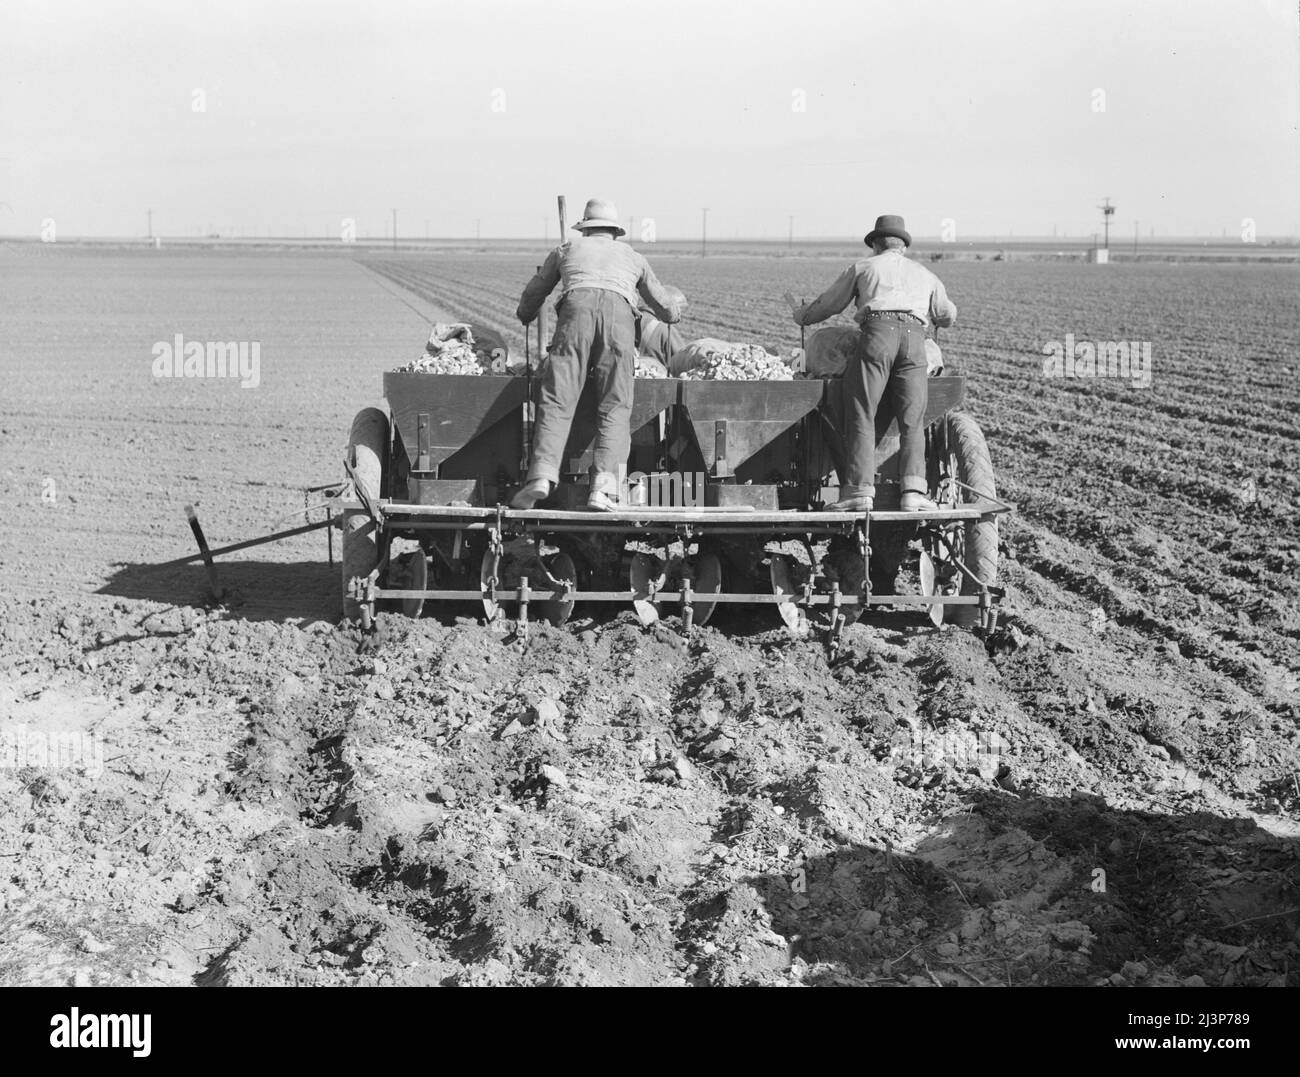 Agriculture mécanisée à grande échelle. Le plantoir de pommes de terre exploité par une équipe de trois hommes, fait les rangs, fertilise et plante les pommes de terre en une seule opération. Kern County, Californie. Banque D'Images